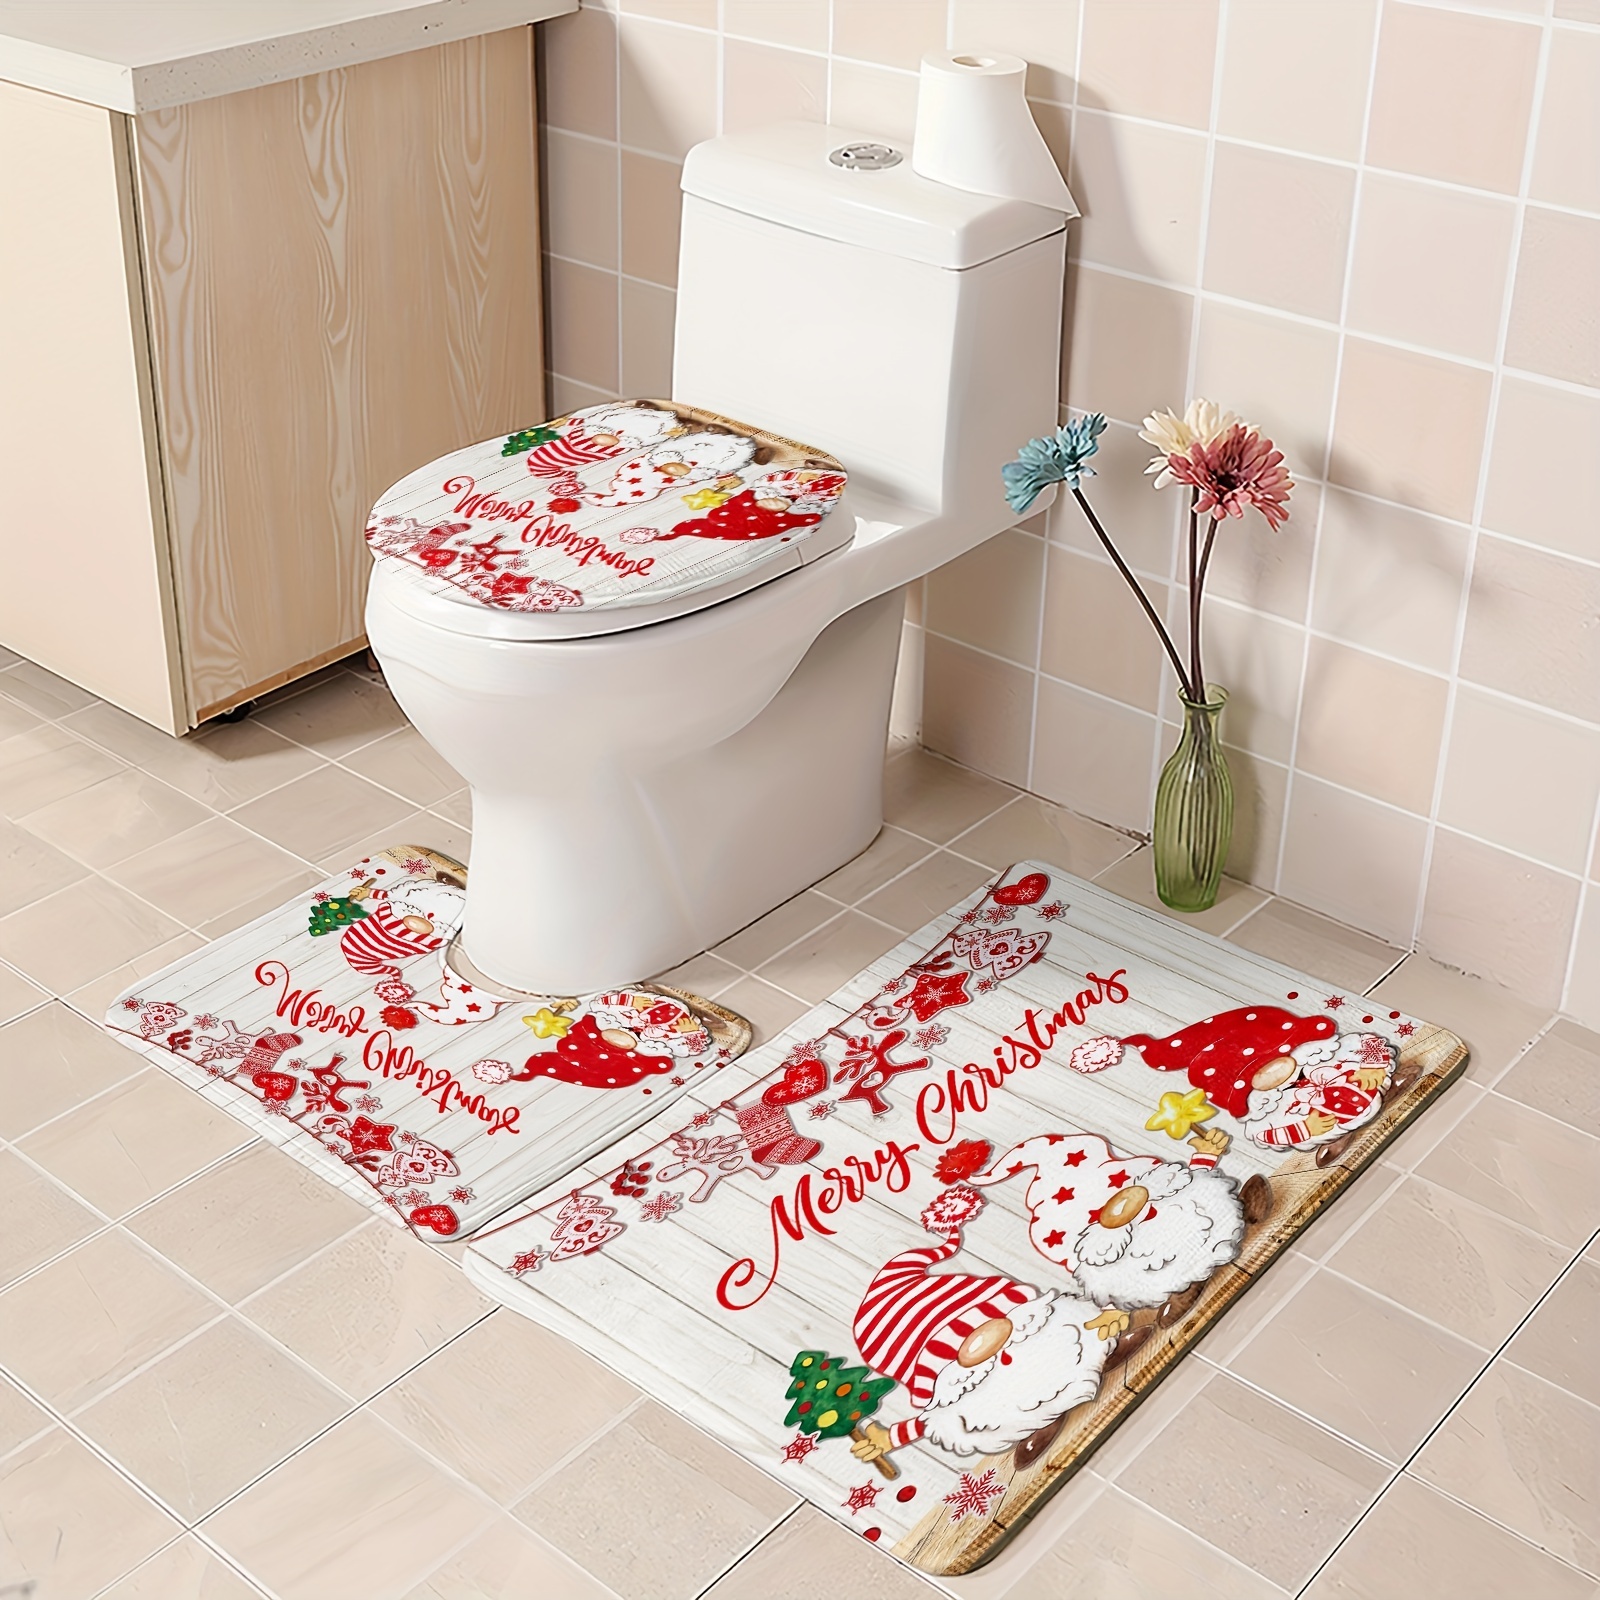 Cute Hello Kitty Shower Curtain Bathtub Bathroom Toilet Cover Mat